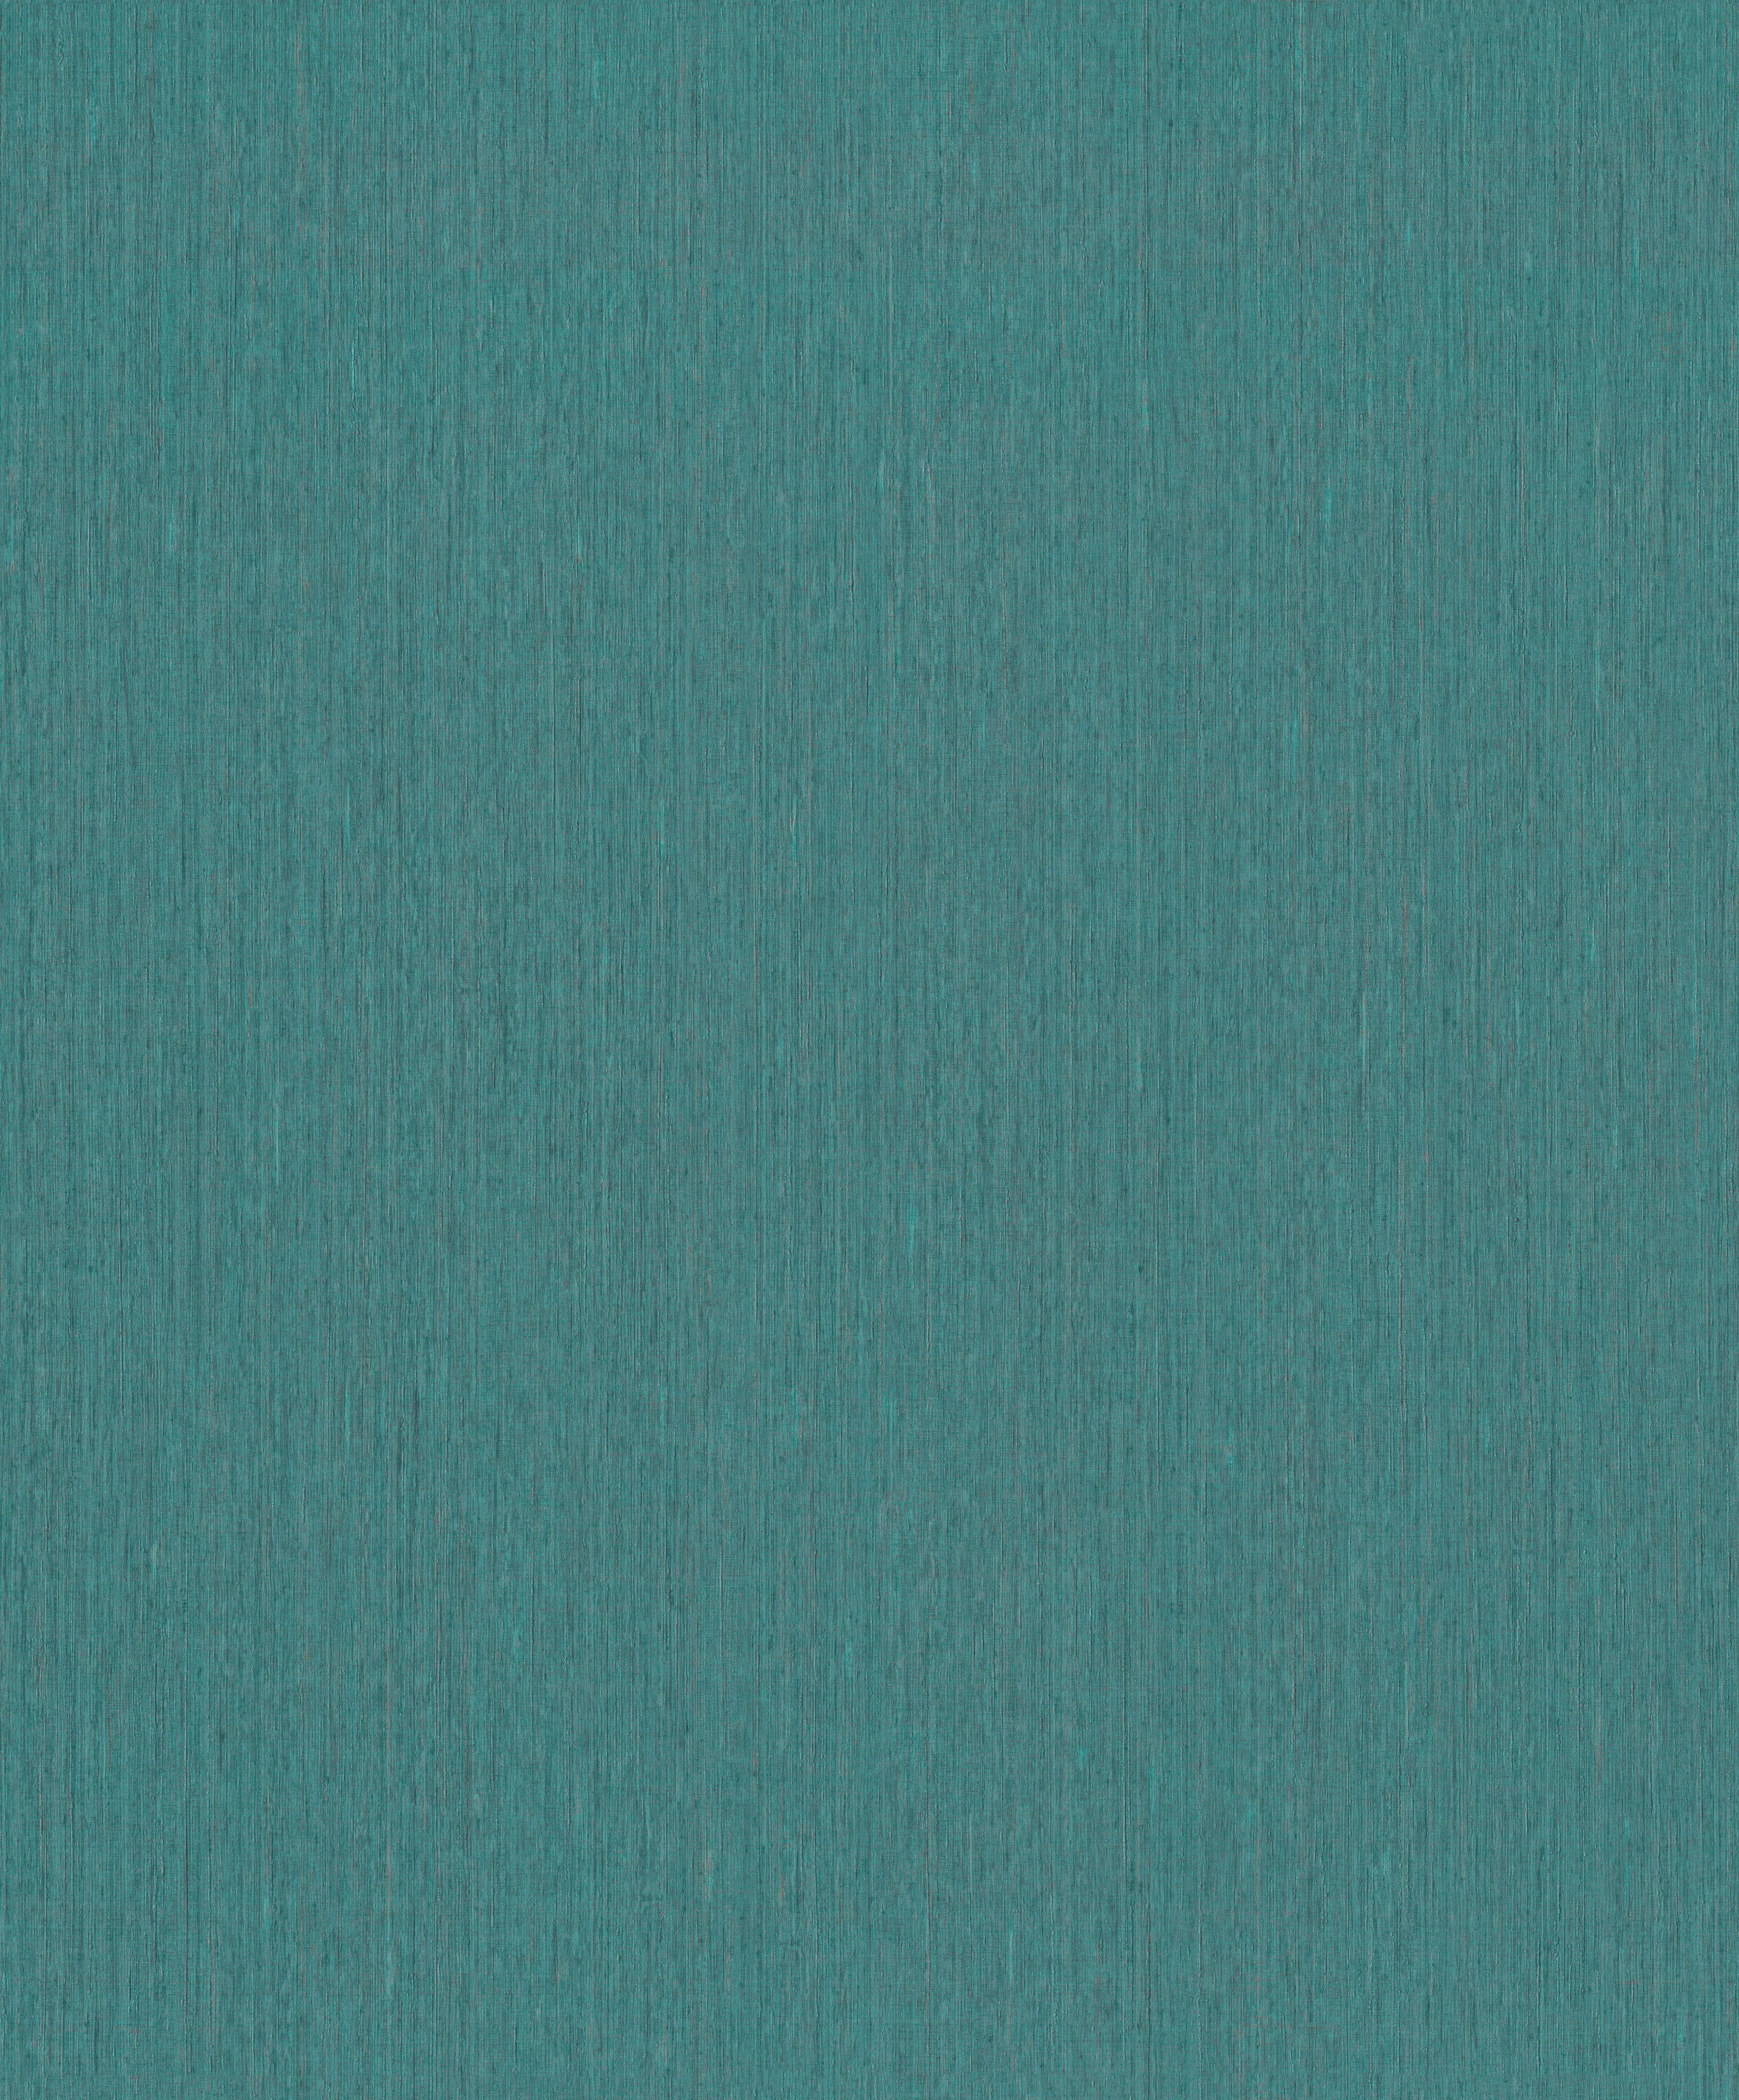 Kék-türkíz egyszínű uni vlies tapéta